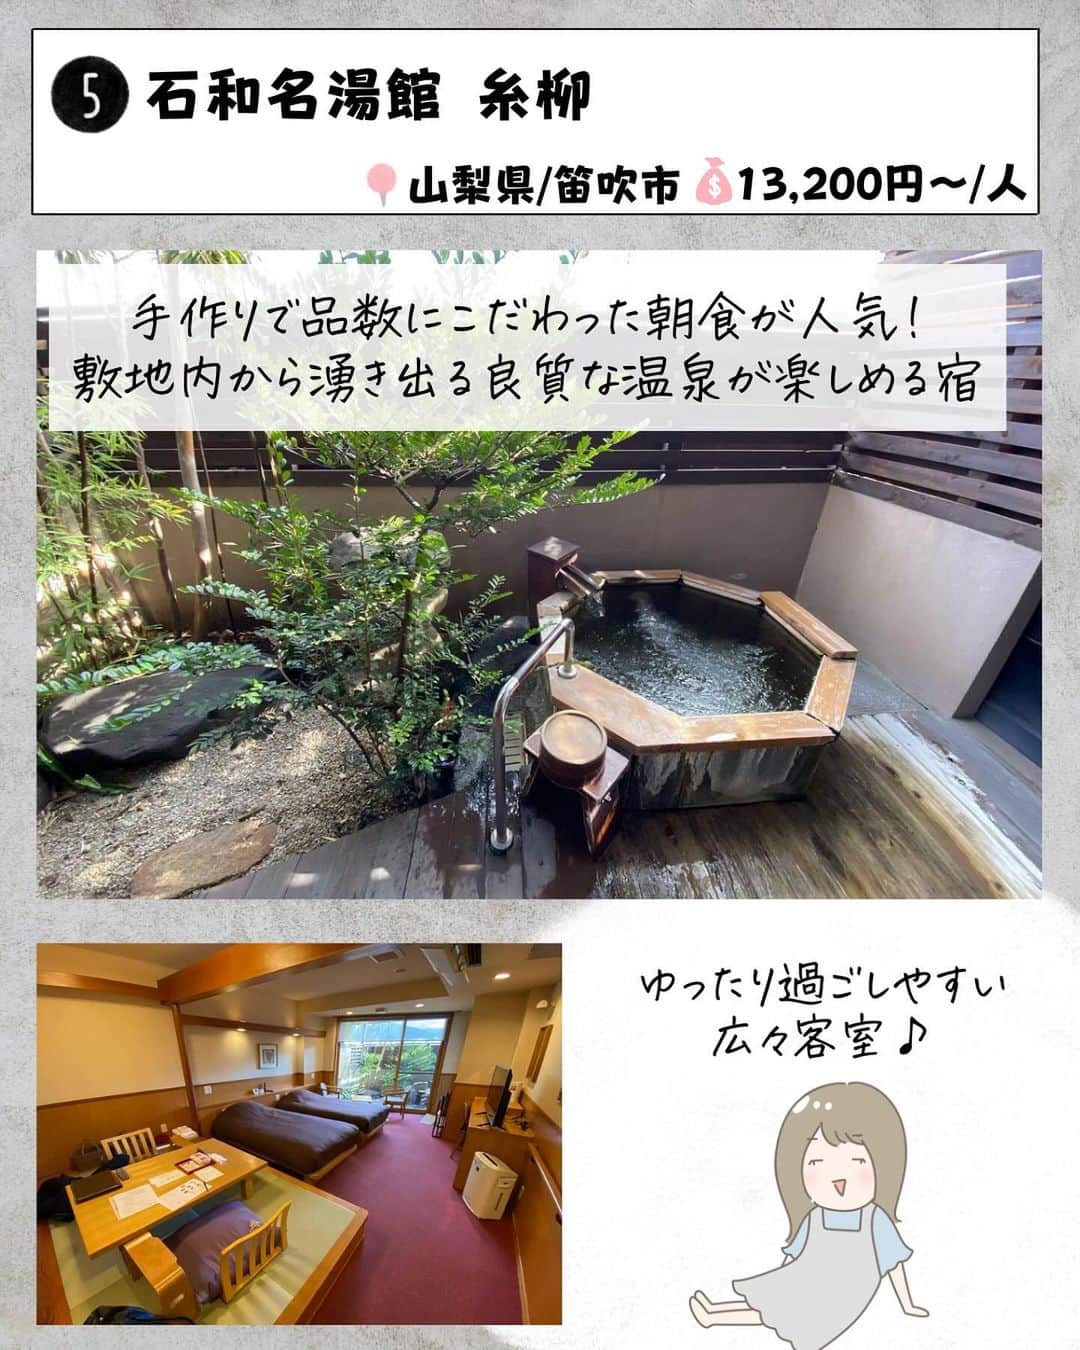 ぴち家さんのインスタグラム写真 - (ぴち家Instagram)「. お得を極めて旅に生きる夫婦、 ぴち家（@travelife_couple）です。 ⁡ 今回は「本当はヒミツにしたいホテル」の特集です。  静かな里山の中で日頃の疲れを癒やしたり、 京都ならではの舞妓体験ができるホテルなど 普段はできないような体験が楽しめちゃう！ 本当はヒミツにしたいホテルを紹介するよ✨  1年の自分へのご褒美に素敵なホテルに泊まるのもありだよね～✨  みんなもオススメホテルがあったらコメントで教えてね☺️ ✨  ⁡ ※ホテル価格は楽天トラベルで検索した最安値を記載しています。 時期により変動があるため参考程度としてください！ ⁡ 【𝕚𝕟𝕗𝕠𝕣𝕞𝕒𝕥𝕚𝕠𝕟𓏗𓏗】 ❶ ゆづくしSalon一の坊 📍宮城県仙台市青葉区作並長原3 （写真:@aikaten1210様より）  ❷ リッチモンドホテルプレミア京都四条 📍京都府京都市下京区四条通油小路東入傘鉾町50 ⁡（写真:@chanmimnahc様より）  ❸ ガーデンテラス長崎ホテル＆リゾート 📍長崎県長崎市秋月町2-3 （写真:@mj811117様より）  ❹ 番場おおそね 📍埼玉県秩父市番場19-2 ⁡（写真:@rk_osw様より）  ➎ 石和名湯館 糸柳 📍山梨県笛吹市石和町駅前13-8 （写真:@2kriyo2様より）  ❻ あらたし　みなかみ 📍群馬県利根郡みなかみ町湯原740-3 ⁡（写真:@jaiko_gogo様より）  ➐  GALLERIA MIDOBARU （ガレリア御堂原） 📍大分県別府市堀田６組 （写真:@84saki25様より）  ーーーーーーーーーーーーーーーーーー✽ ⁡ ぴち家（@travelife_couple）って？ ⁡ バン🚐で旅してホテルやスポット巡り！ お得旅行が大好きな夫婦です。 ⁡ ✔︎旅行先やホテル ✔︎観光スポット・グルメまとめ ✔︎旅費を作るためのお金の話を発信中𓂃𓈒𓏸 ⁡ ⁡ また本アカウント以外にも、以下を運営しております。 少しでも役立ちそう、応援してもいいと思って 頂ける方はフォローよろしくお願いしますˎˊ˗ ⁡ 📷日常・写真メインの旅行情報 →@travelife_diary （フォロワー4万超） ⁡ 🔰初心者必見のお金・投資情報 →@yuki_moneylife （フォロワー11万超） ⁡ 🎥旅行ムービー発信のTiktok → @ぴち家（フォロワー2.5万超） ⁡ 【テーマ】 「旅行をもっと身近に✈️」 これまで厳しい状況が続いてきた旅行・飲食業界を盛り上げたい！ より多くの人にワクワクする旅行先を知って もらえるよう、またお得に旅行が出来るよう、 夫婦二人で発信を頑張っています。 　 【お願い】 応援して頂けるフォロワーの皆様、及び 取材させて頂いている企業様にはいつも感謝しております！🙇‍♂️🙇‍♀️ お仕事依頼も承っておりますので、 応援頂ける企業・自治体様はぜひ プロフィールのお問合せよりご連絡お願いします。 ⁡ ぴち家(@travelife_couple) ⁡ ✽ーーーーーーーーーーーーーーーーー ⁡ #ゆづくしSalon一の坊 #リッチモンドホテルプレミア京都四条 #ガーデンテラス長崎ホテルアンドリゾート #番場おおそね #石和名湯館糸柳 #あらたしみなかみ #ガレリア御堂原 #おすすめホテル #ぴちホテルまとめ」12月14日 20時00分 - travelife_couple